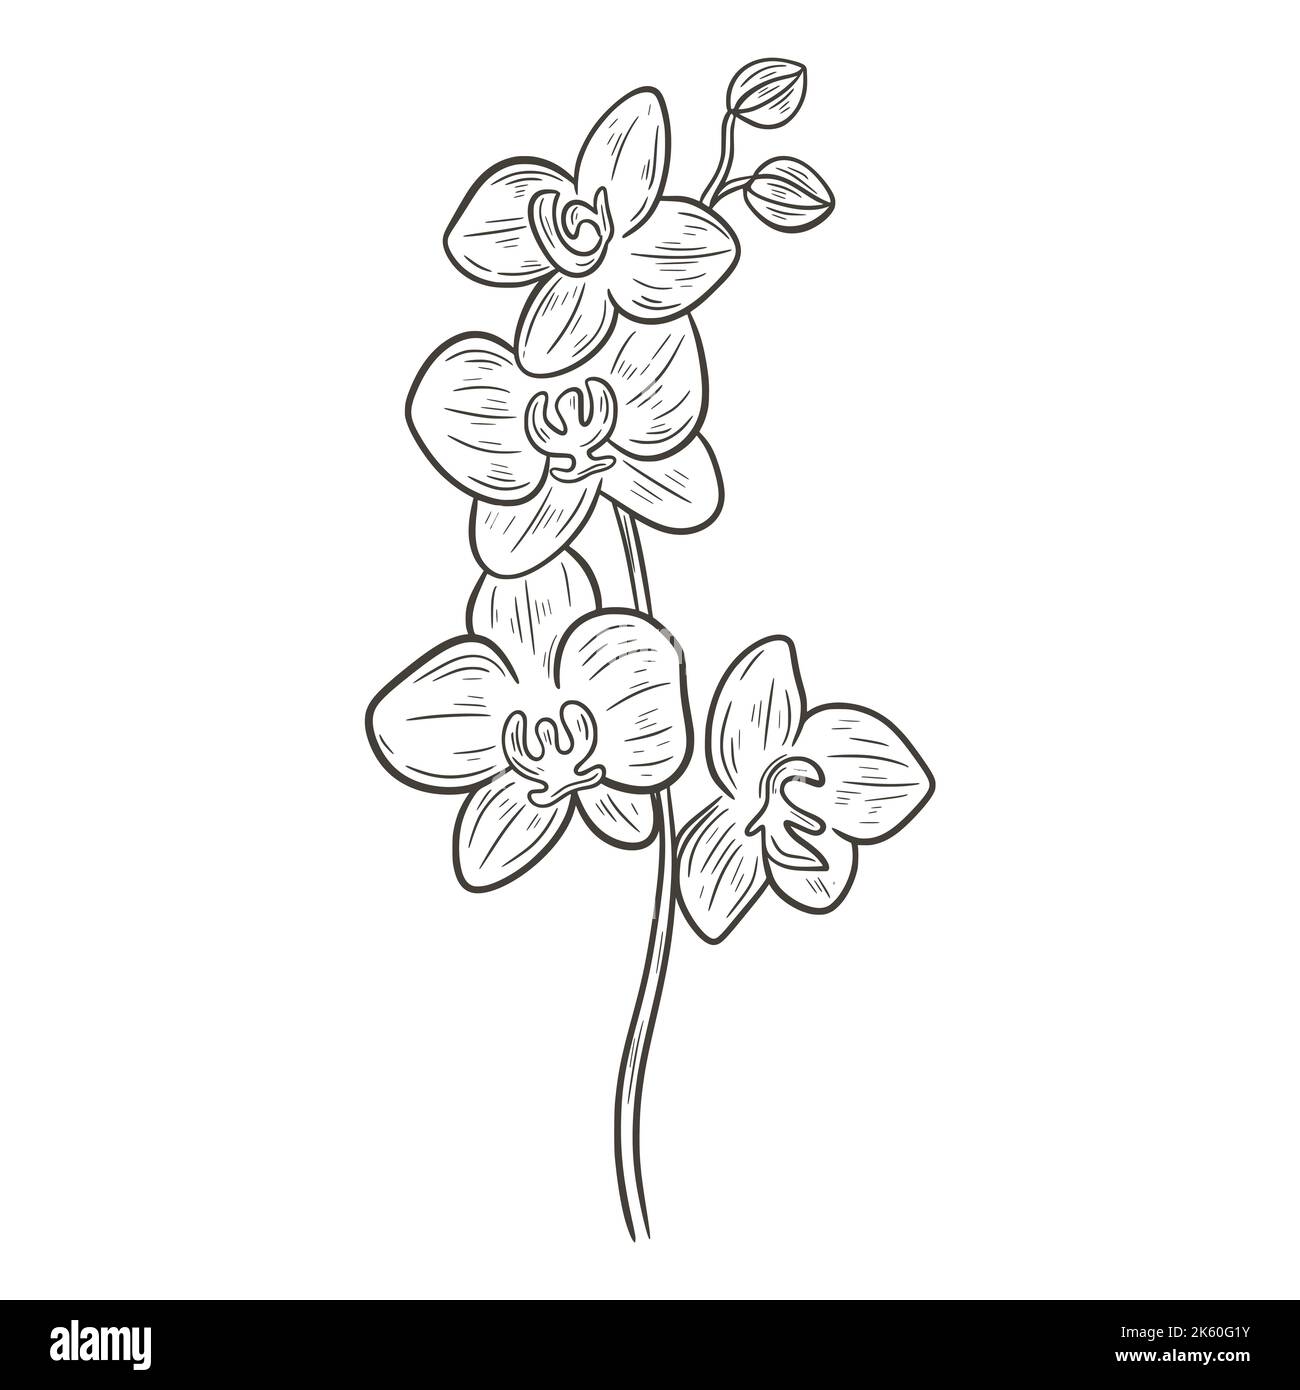 Sticker Mural Fleur Joli dessin au trait orchidée avec branche